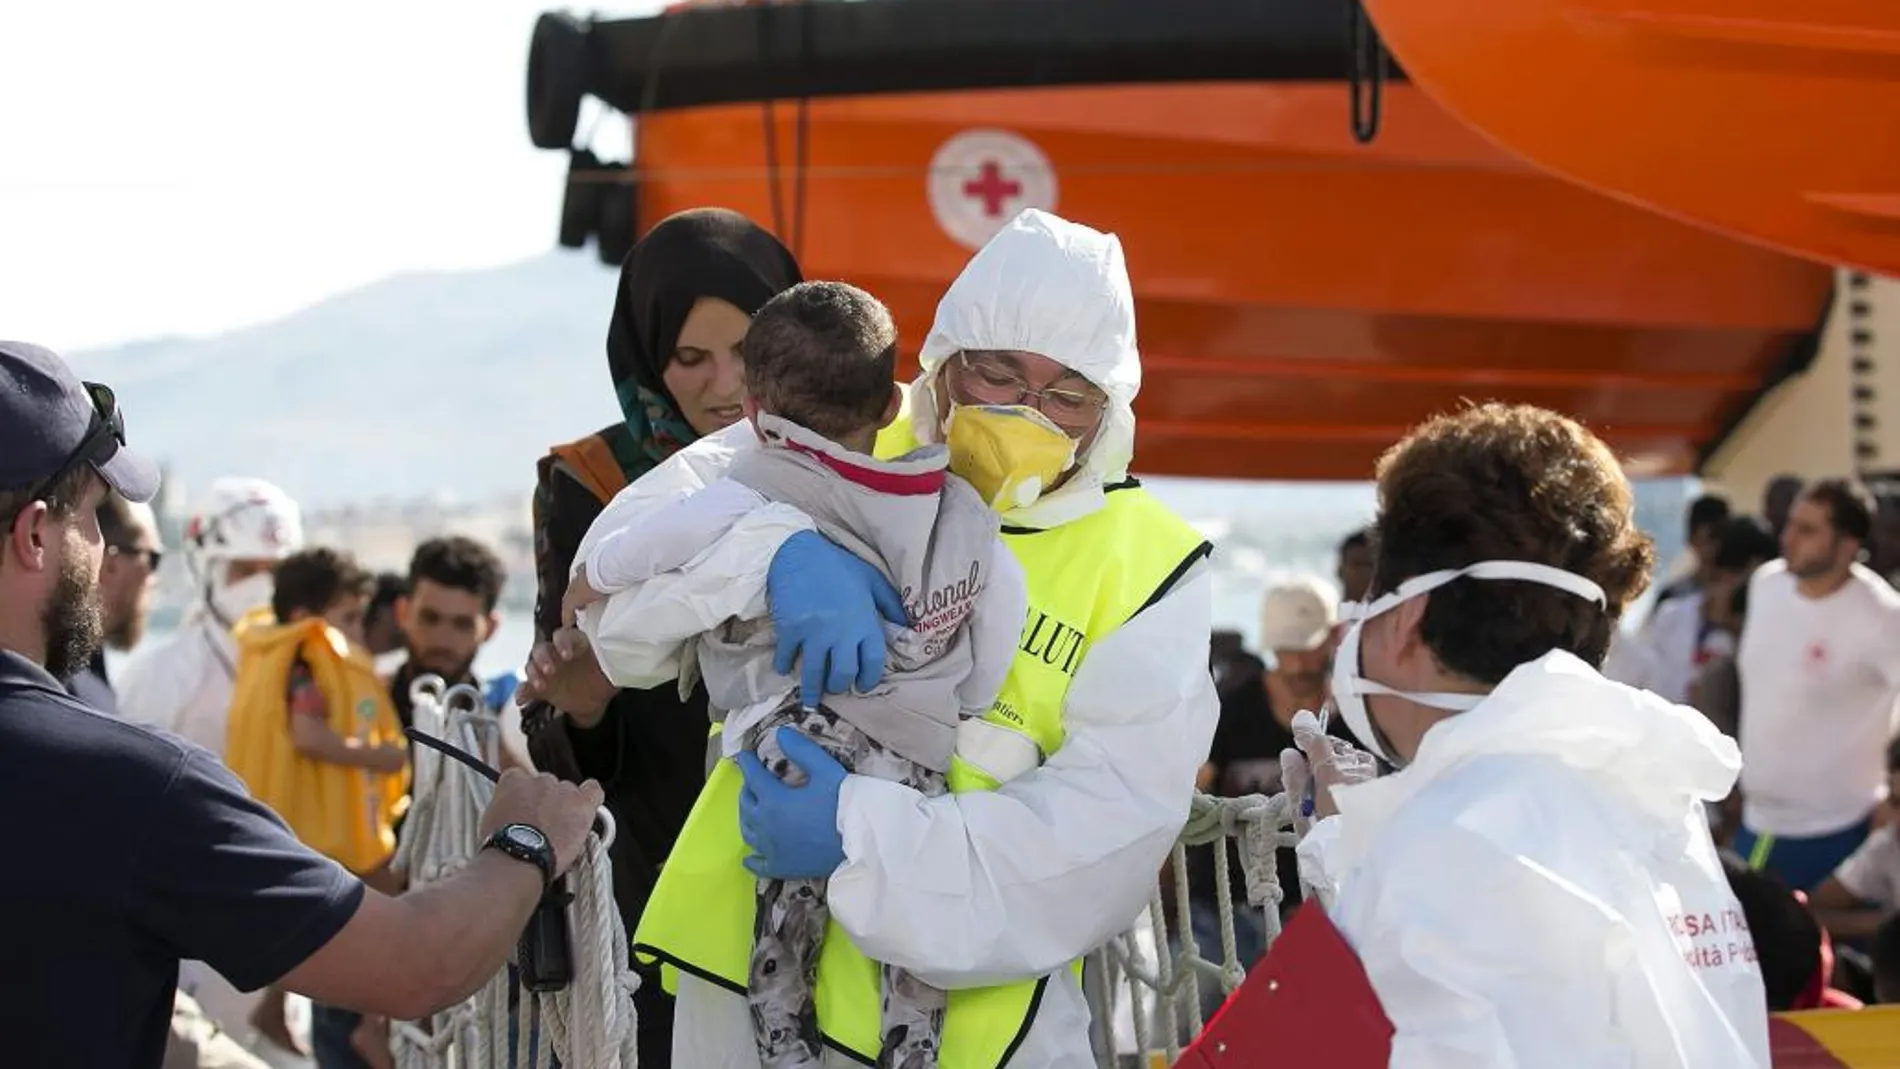 On voluntario ayuda a desembarcar a un bebé rescatado de una patera en el mediterráneo